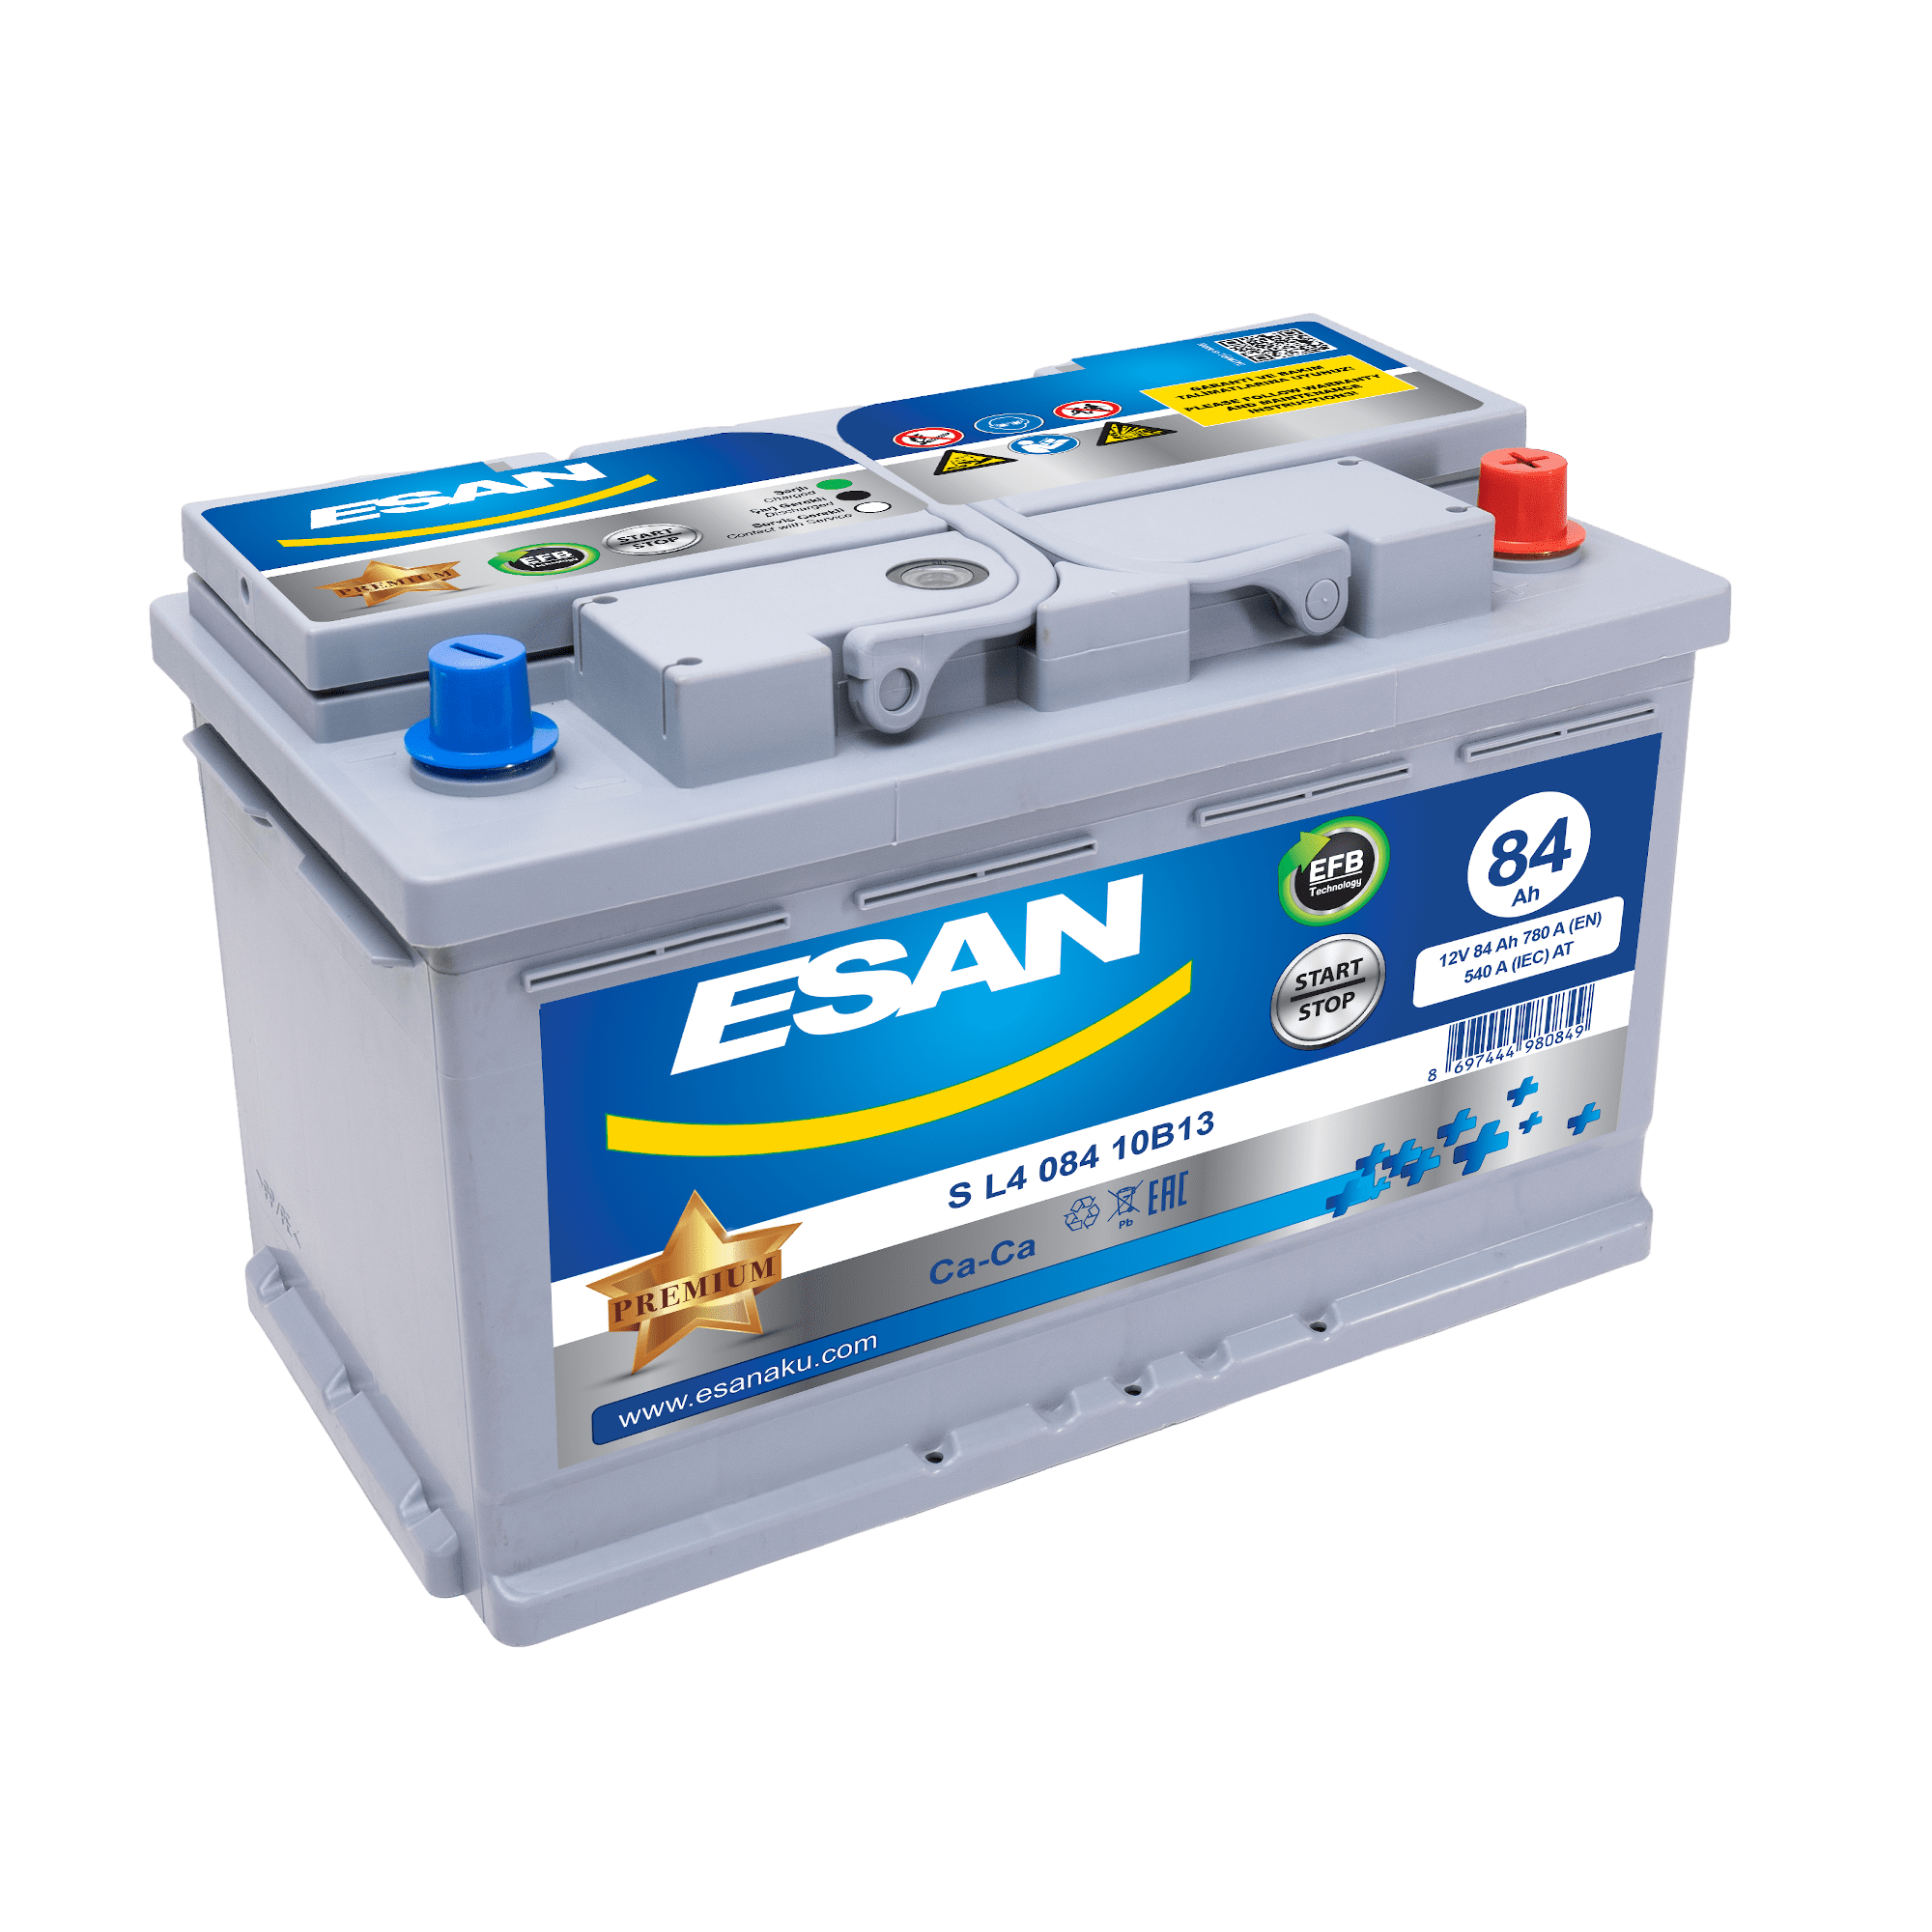 Автомобильная аккумуляторная батарея ESAN EFB Start-Stop S L4 084 10B13, 84 Ач, L4 DIN EFB, 0/1